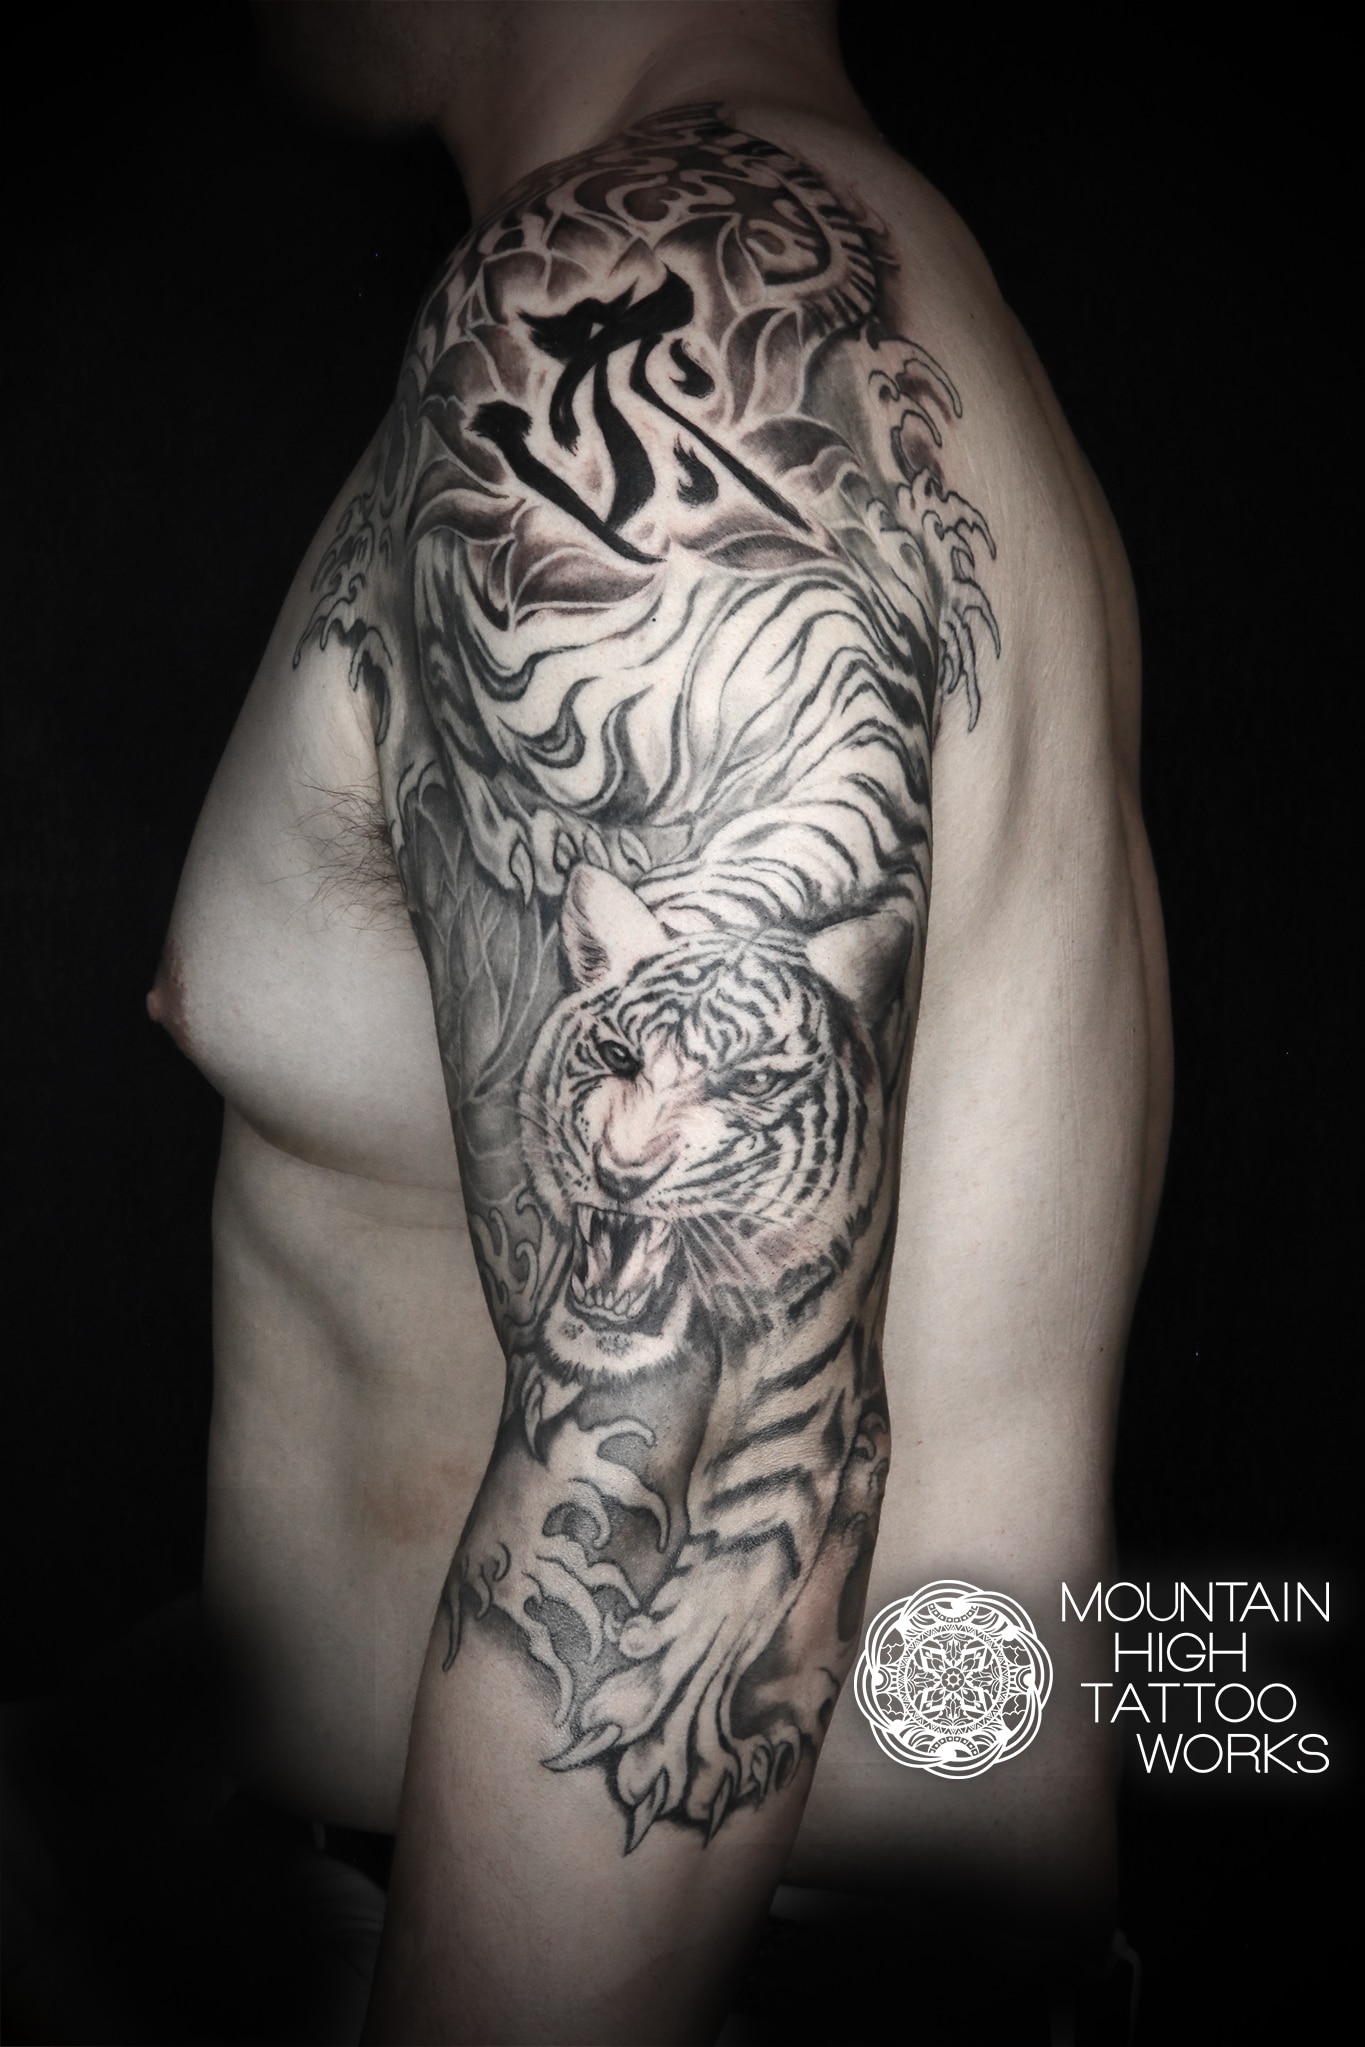 虎と梵字のタトゥー 札幌のタトゥースタジオ Mountain High Tattoo Works作品集